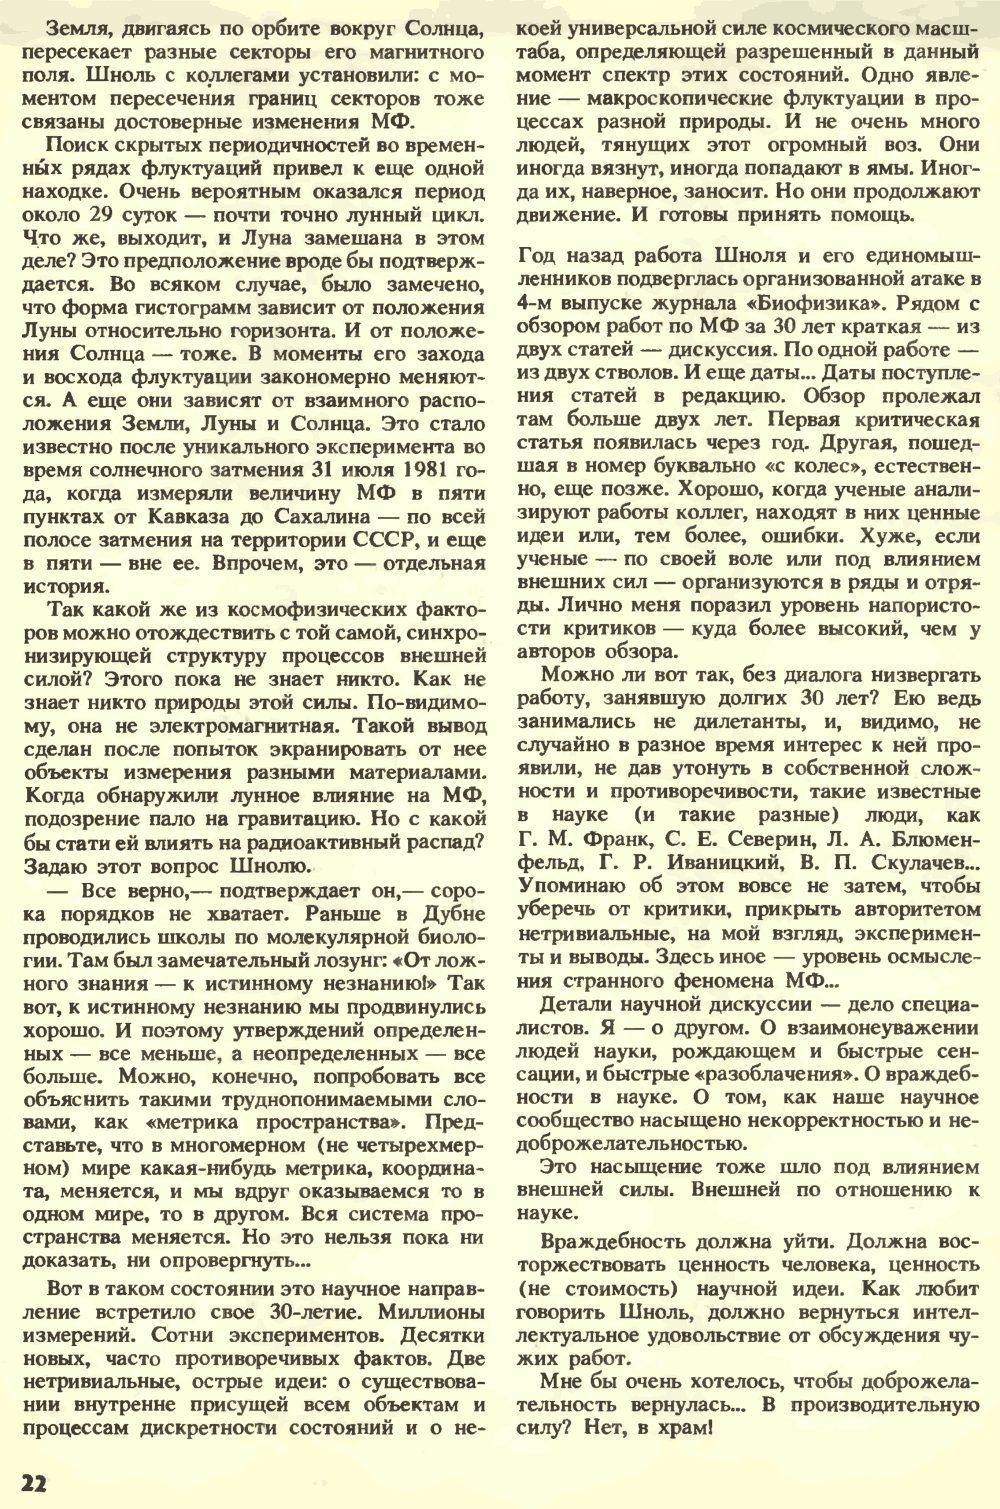 Внешняя сила. С.Н. Катасонов. Химия и жизнь, 1990, №7, с.16-22. Фотокопия №7